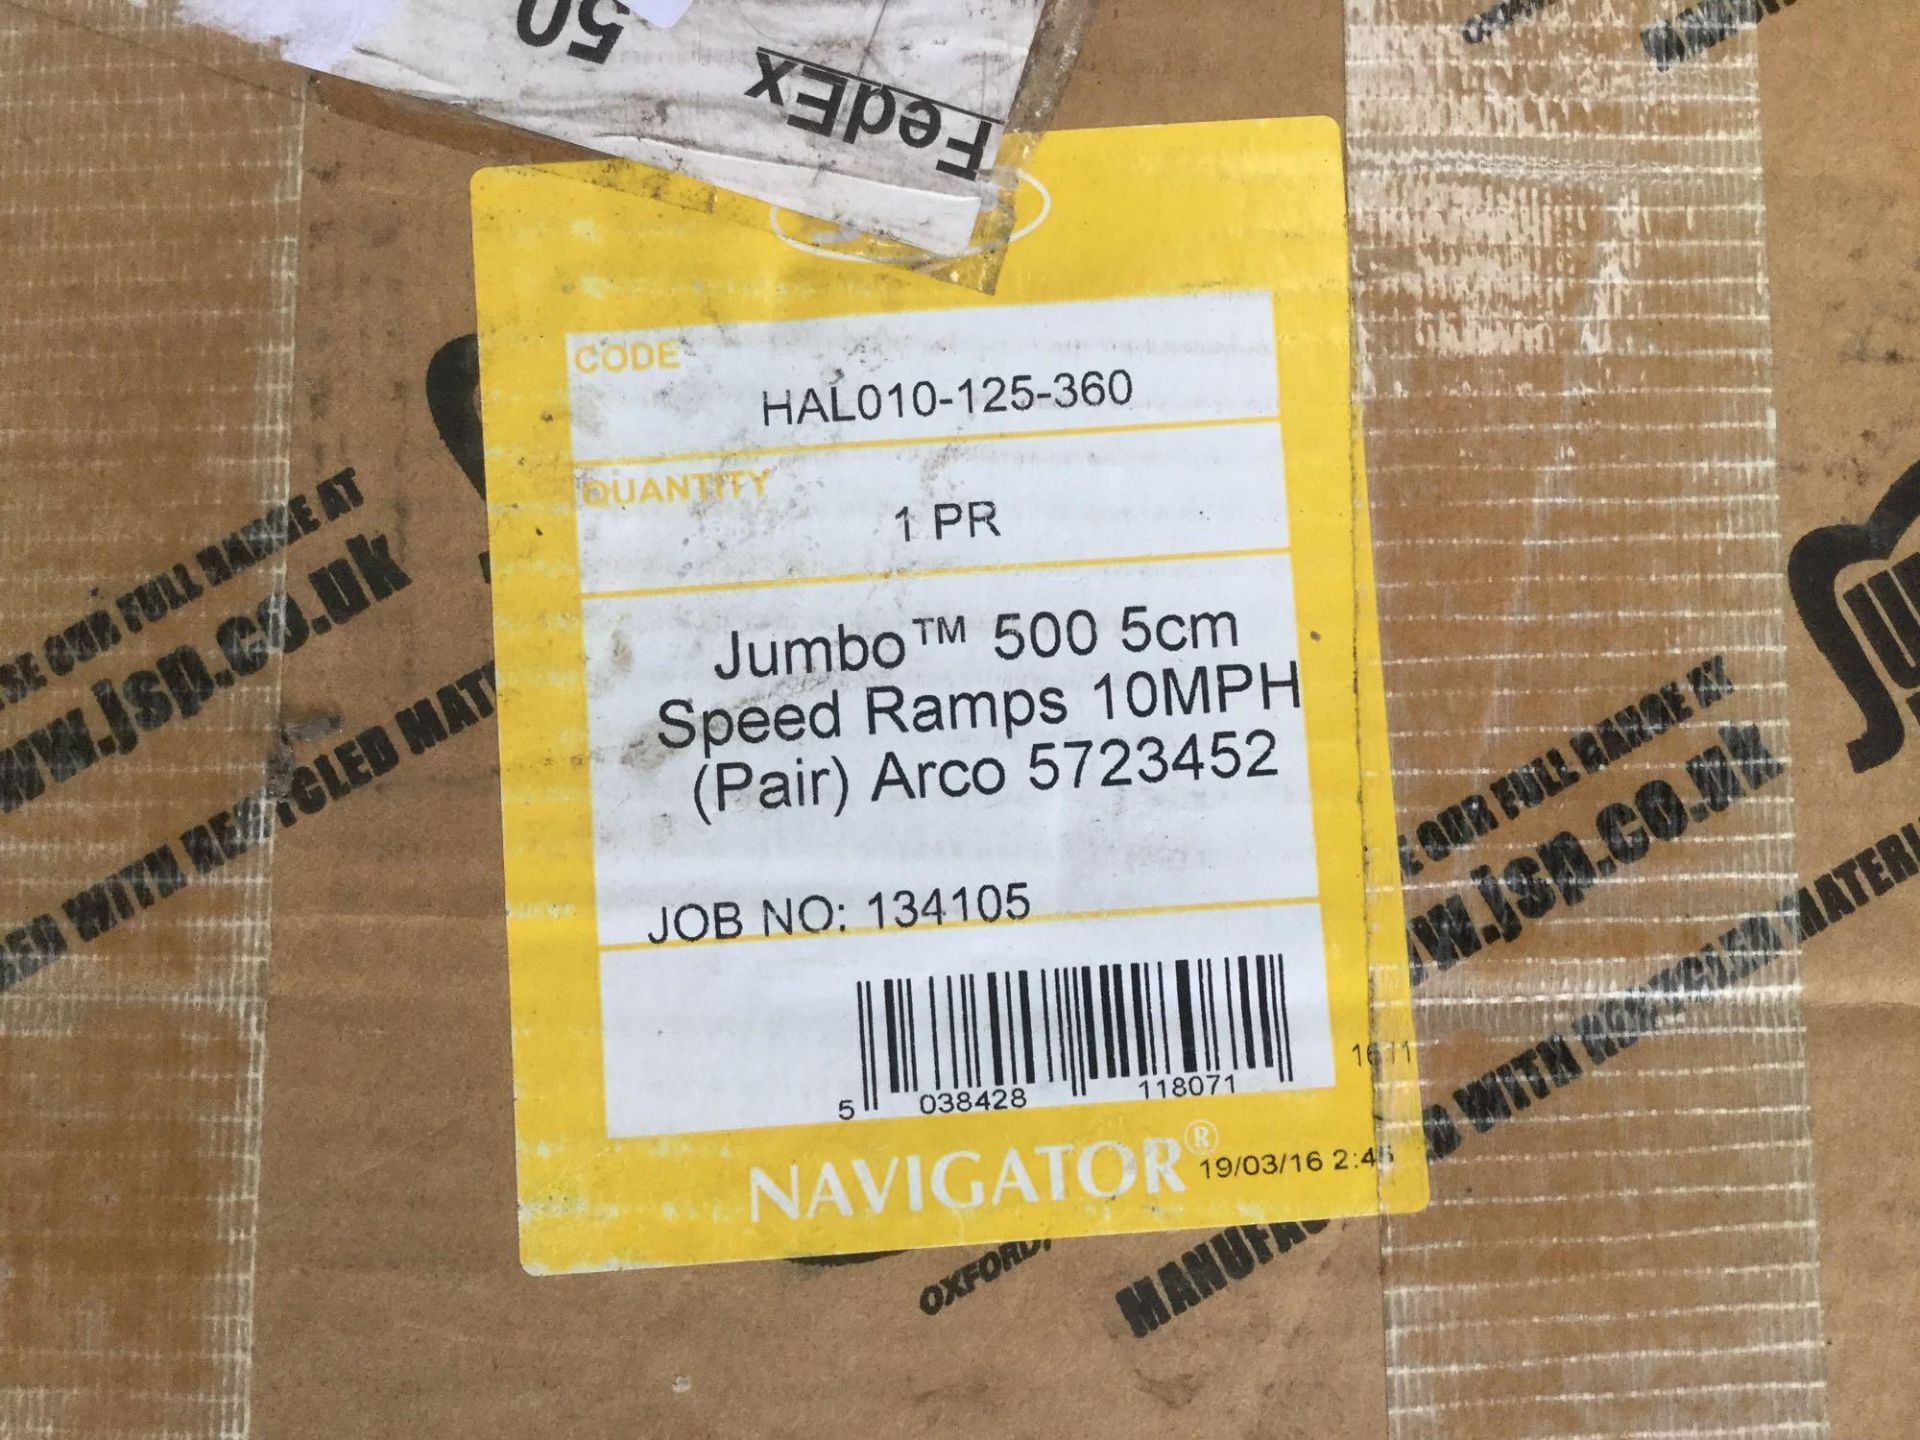 Jumbo 500 5cm speed ramps - Image 2 of 2